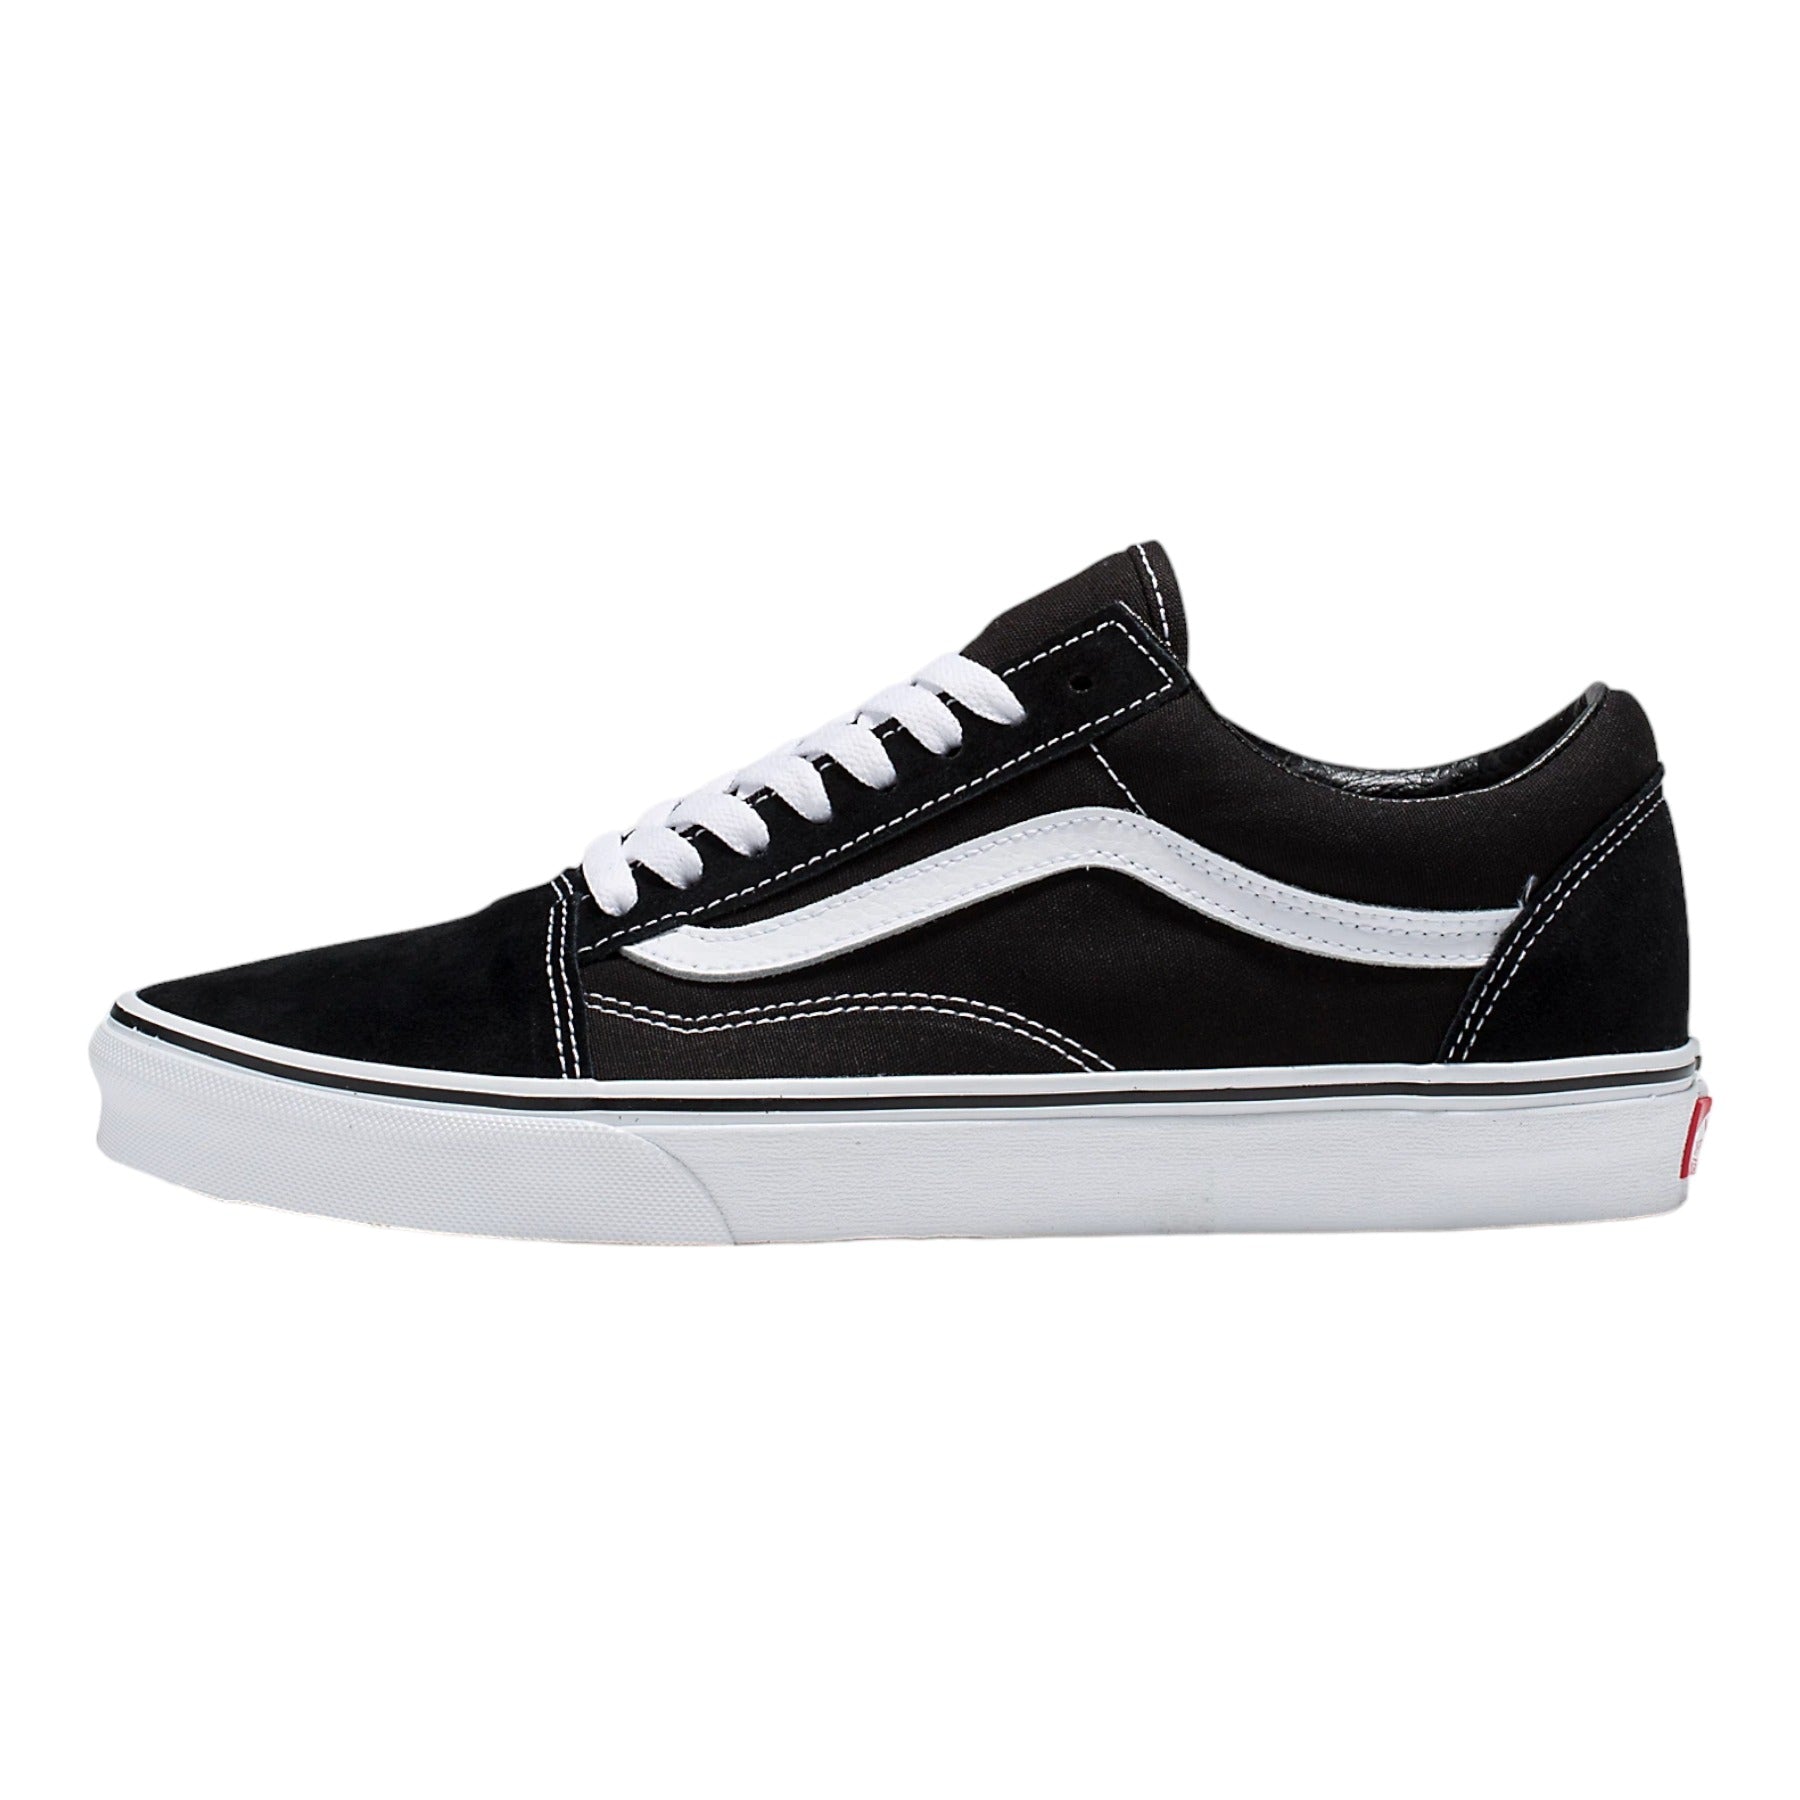 Vans Old Skool Shoes - Black/White